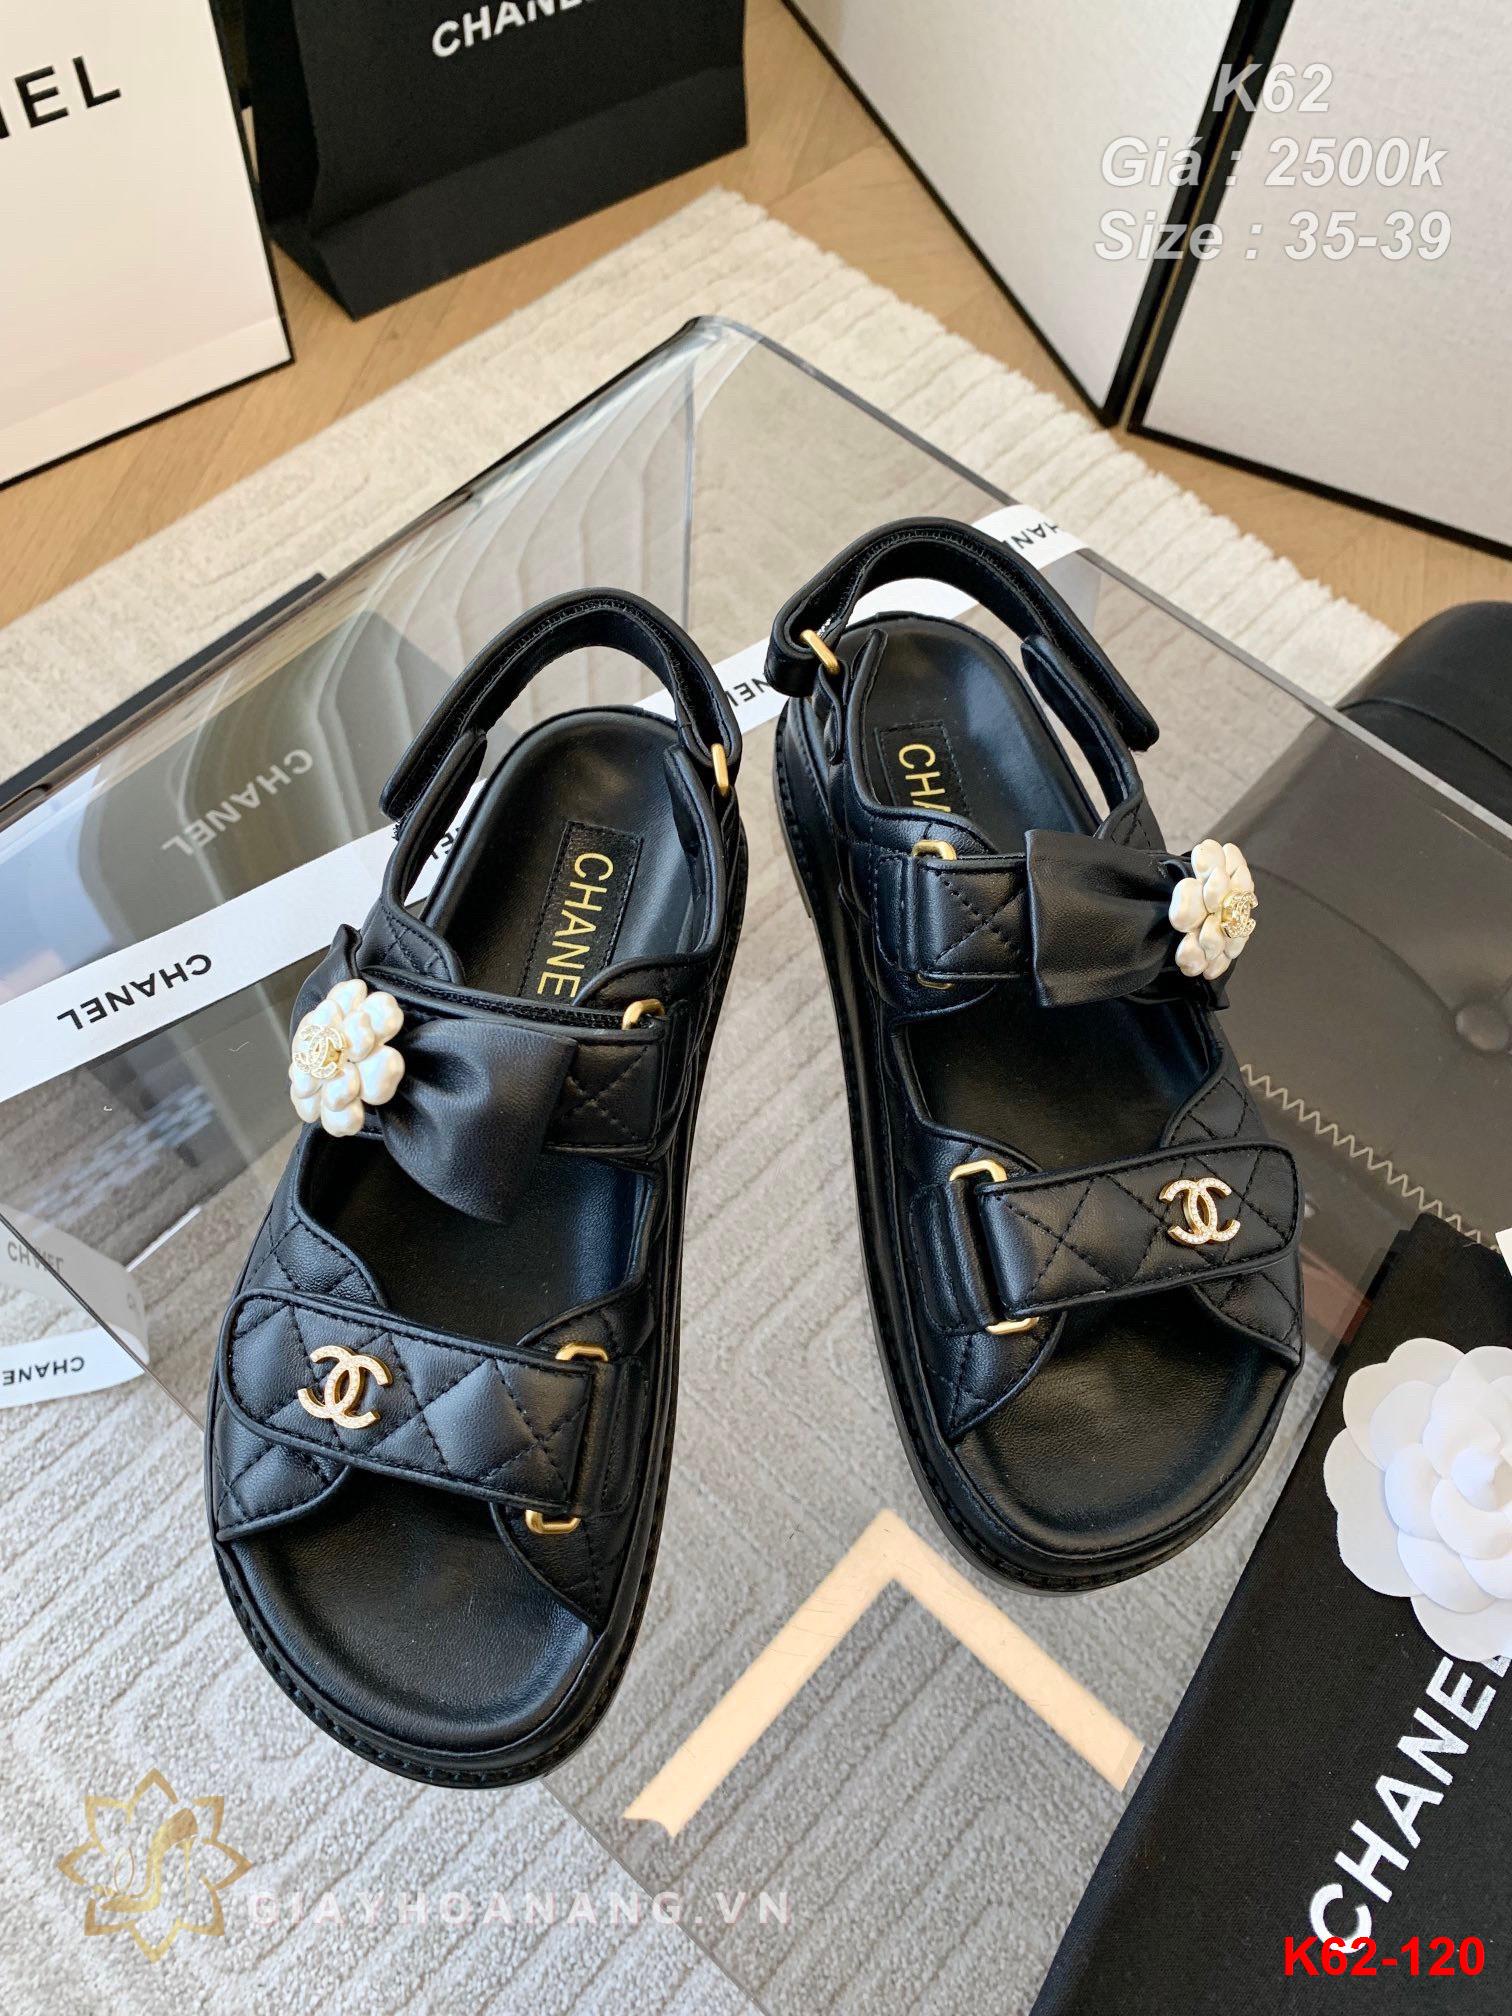 K62-120 Chanel sandal siêu cấp